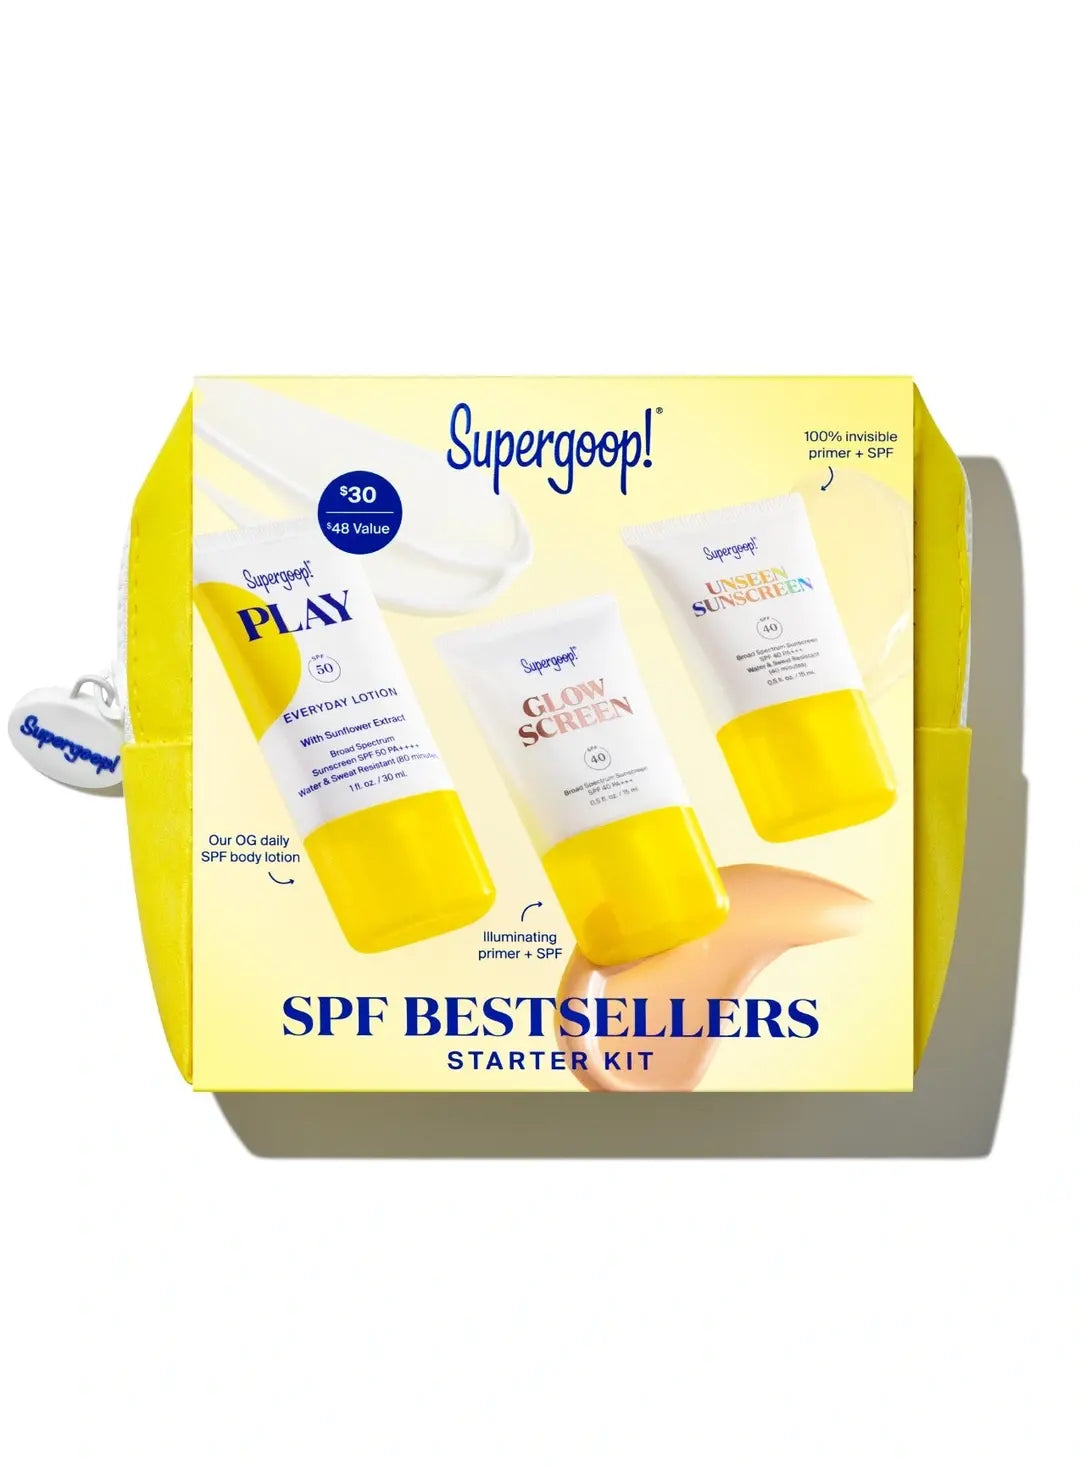 Supergoop SPF Bestsellers Starter Kit